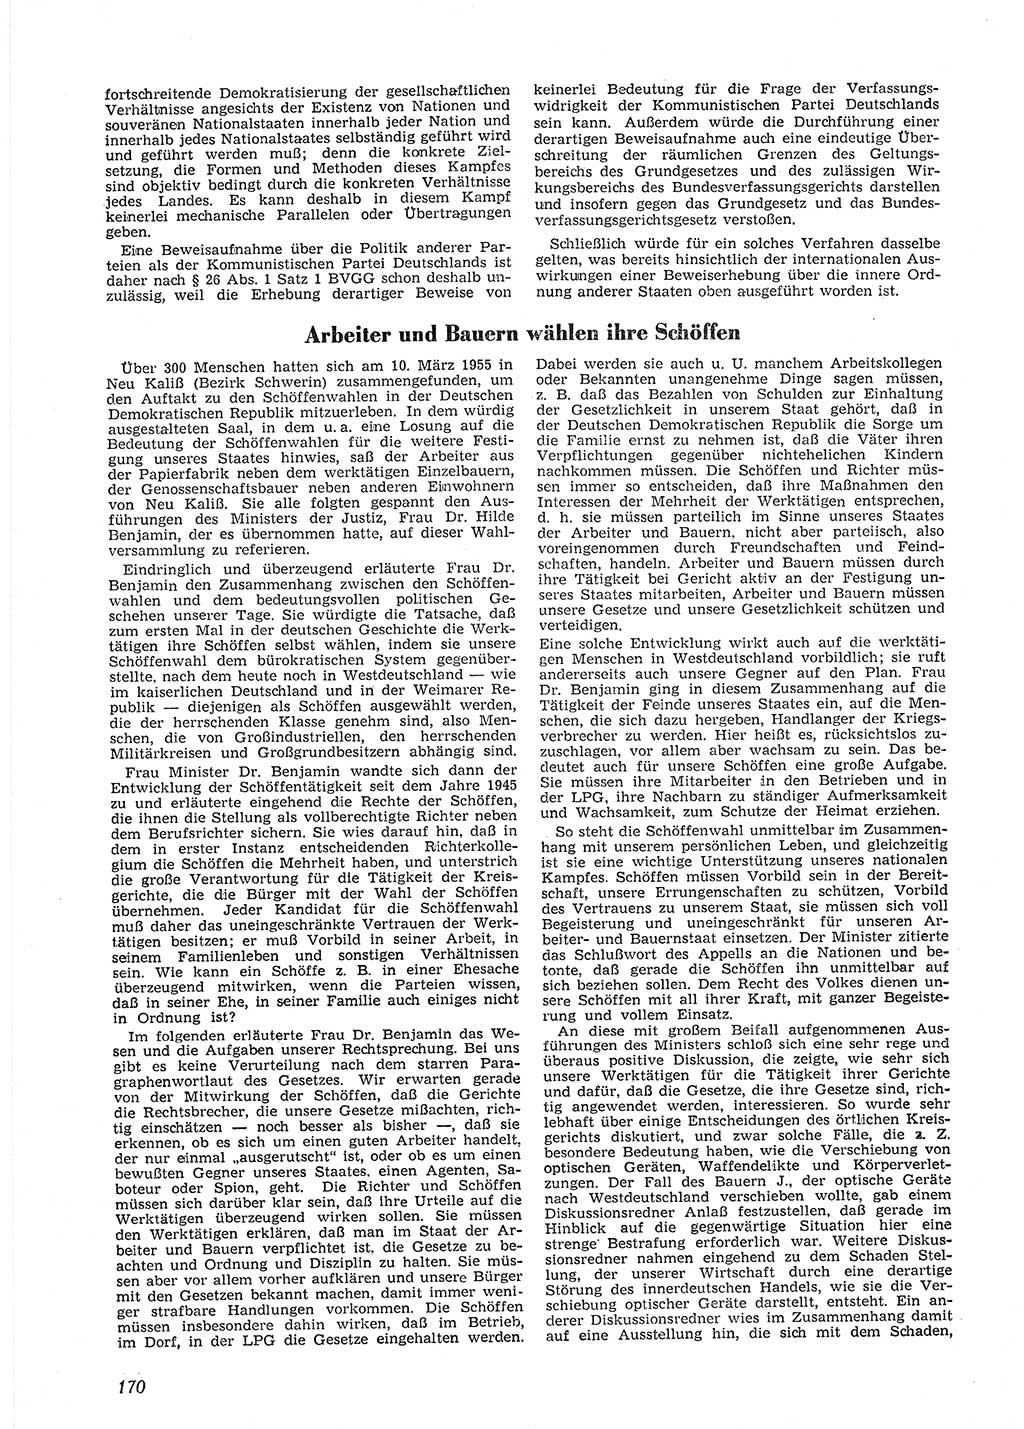 Neue Justiz (NJ), Zeitschrift für Recht und Rechtswissenschaft [Deutsche Demokratische Republik (DDR)], 9. Jahrgang 1955, Seite 170 (NJ DDR 1955, S. 170)